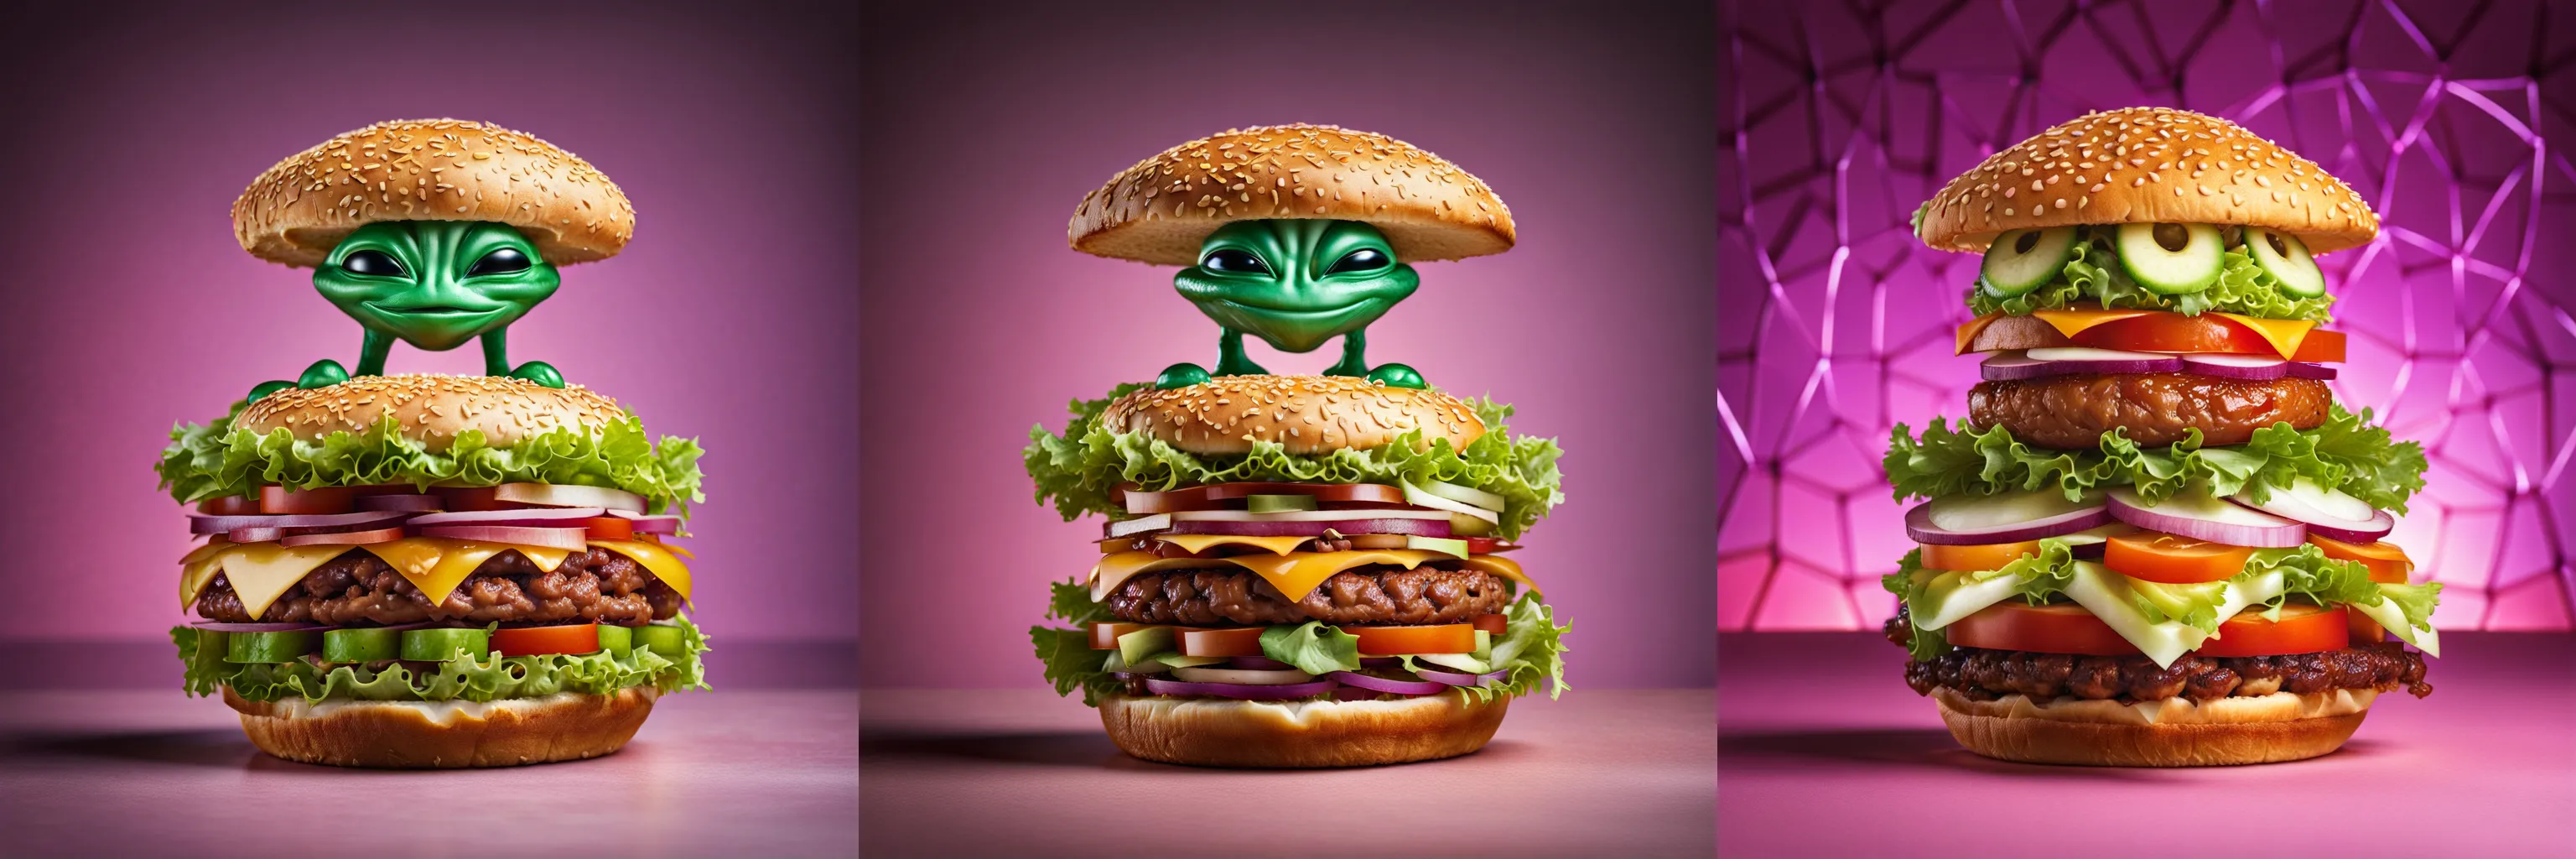 a large delicious hamburger (in the shape of five-dimensional alien geometry)++++, professional food photography - большой вкусный гамбургер (в форме пятимерной инопланетной геометрии)++++, профессиональная фуд-фотография